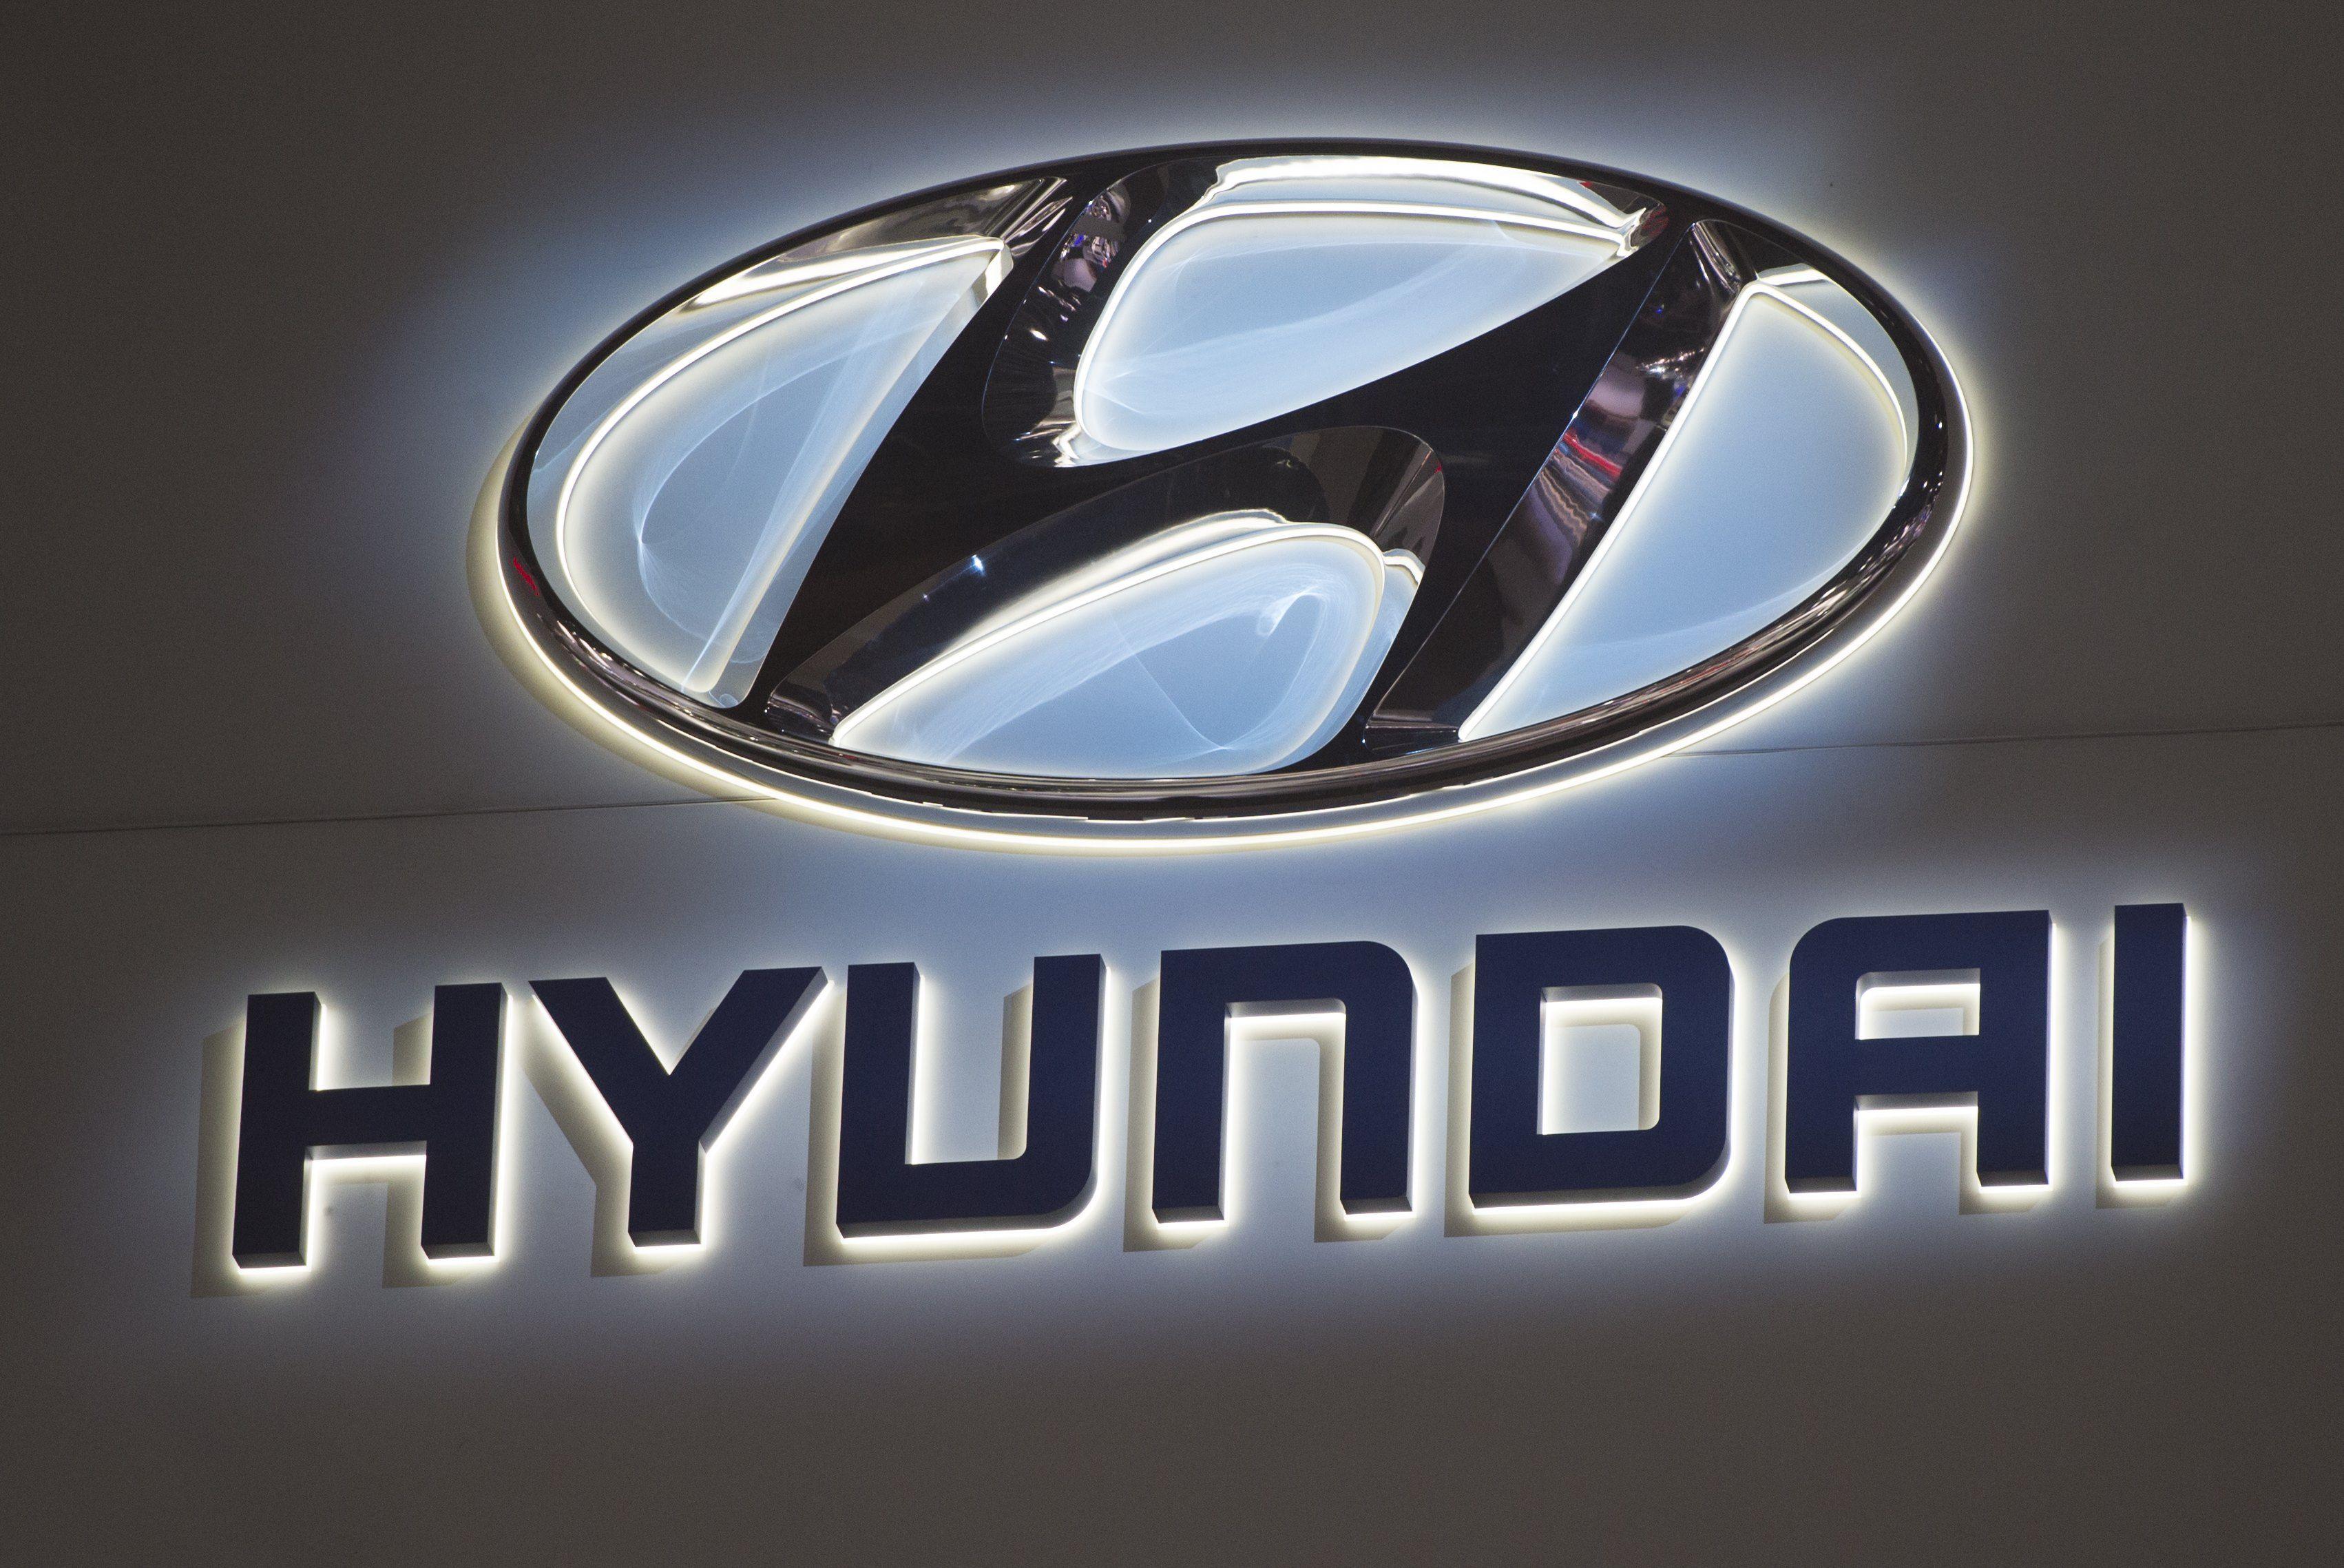 International Car Company Logo - Super Bowl Commercials 2017: Hyundai